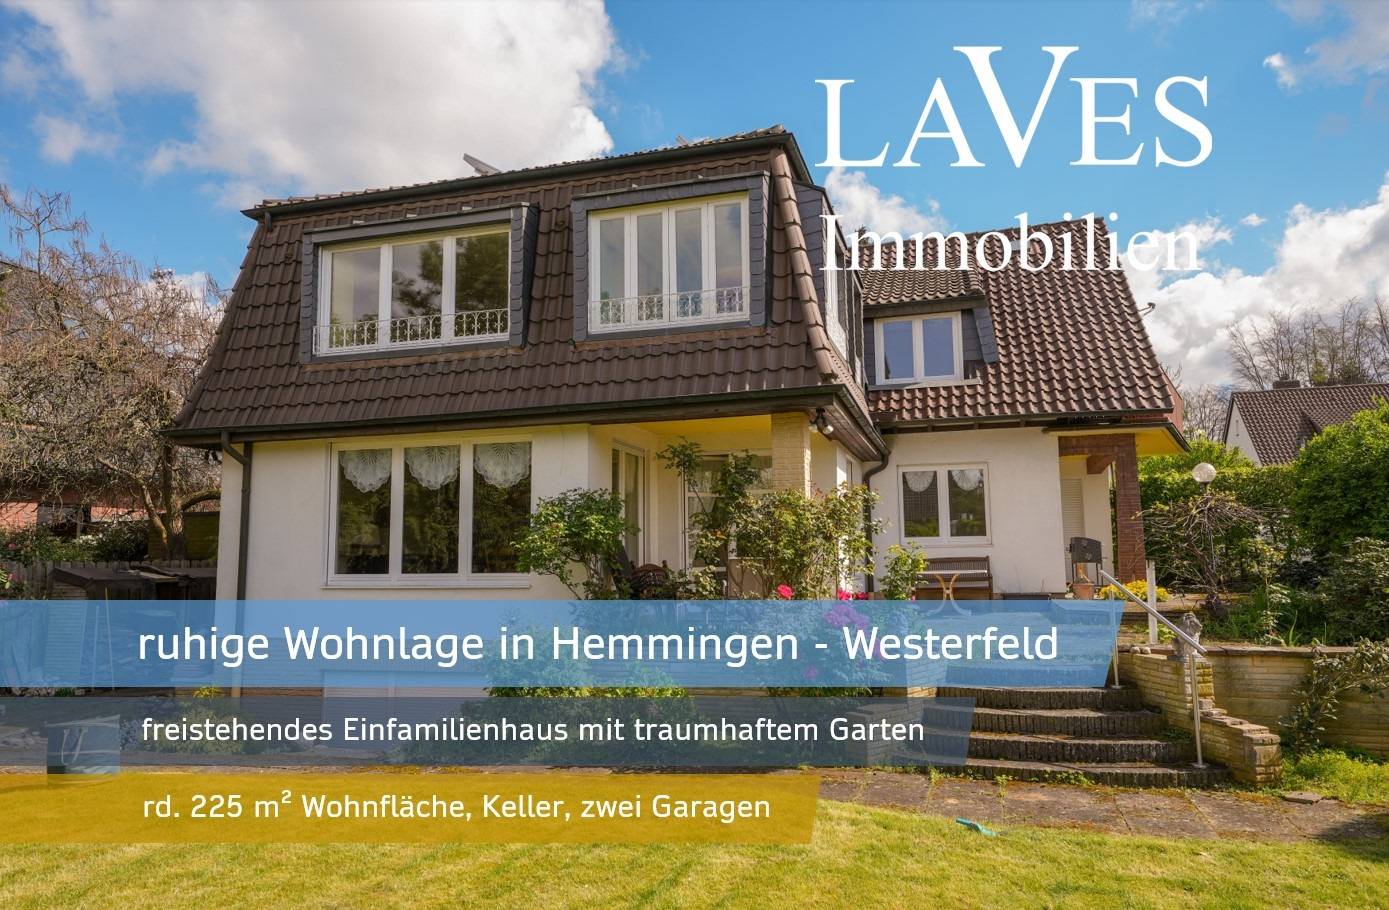 freistehendes Einfamilienhaus in Hemmingen-Westerfeld